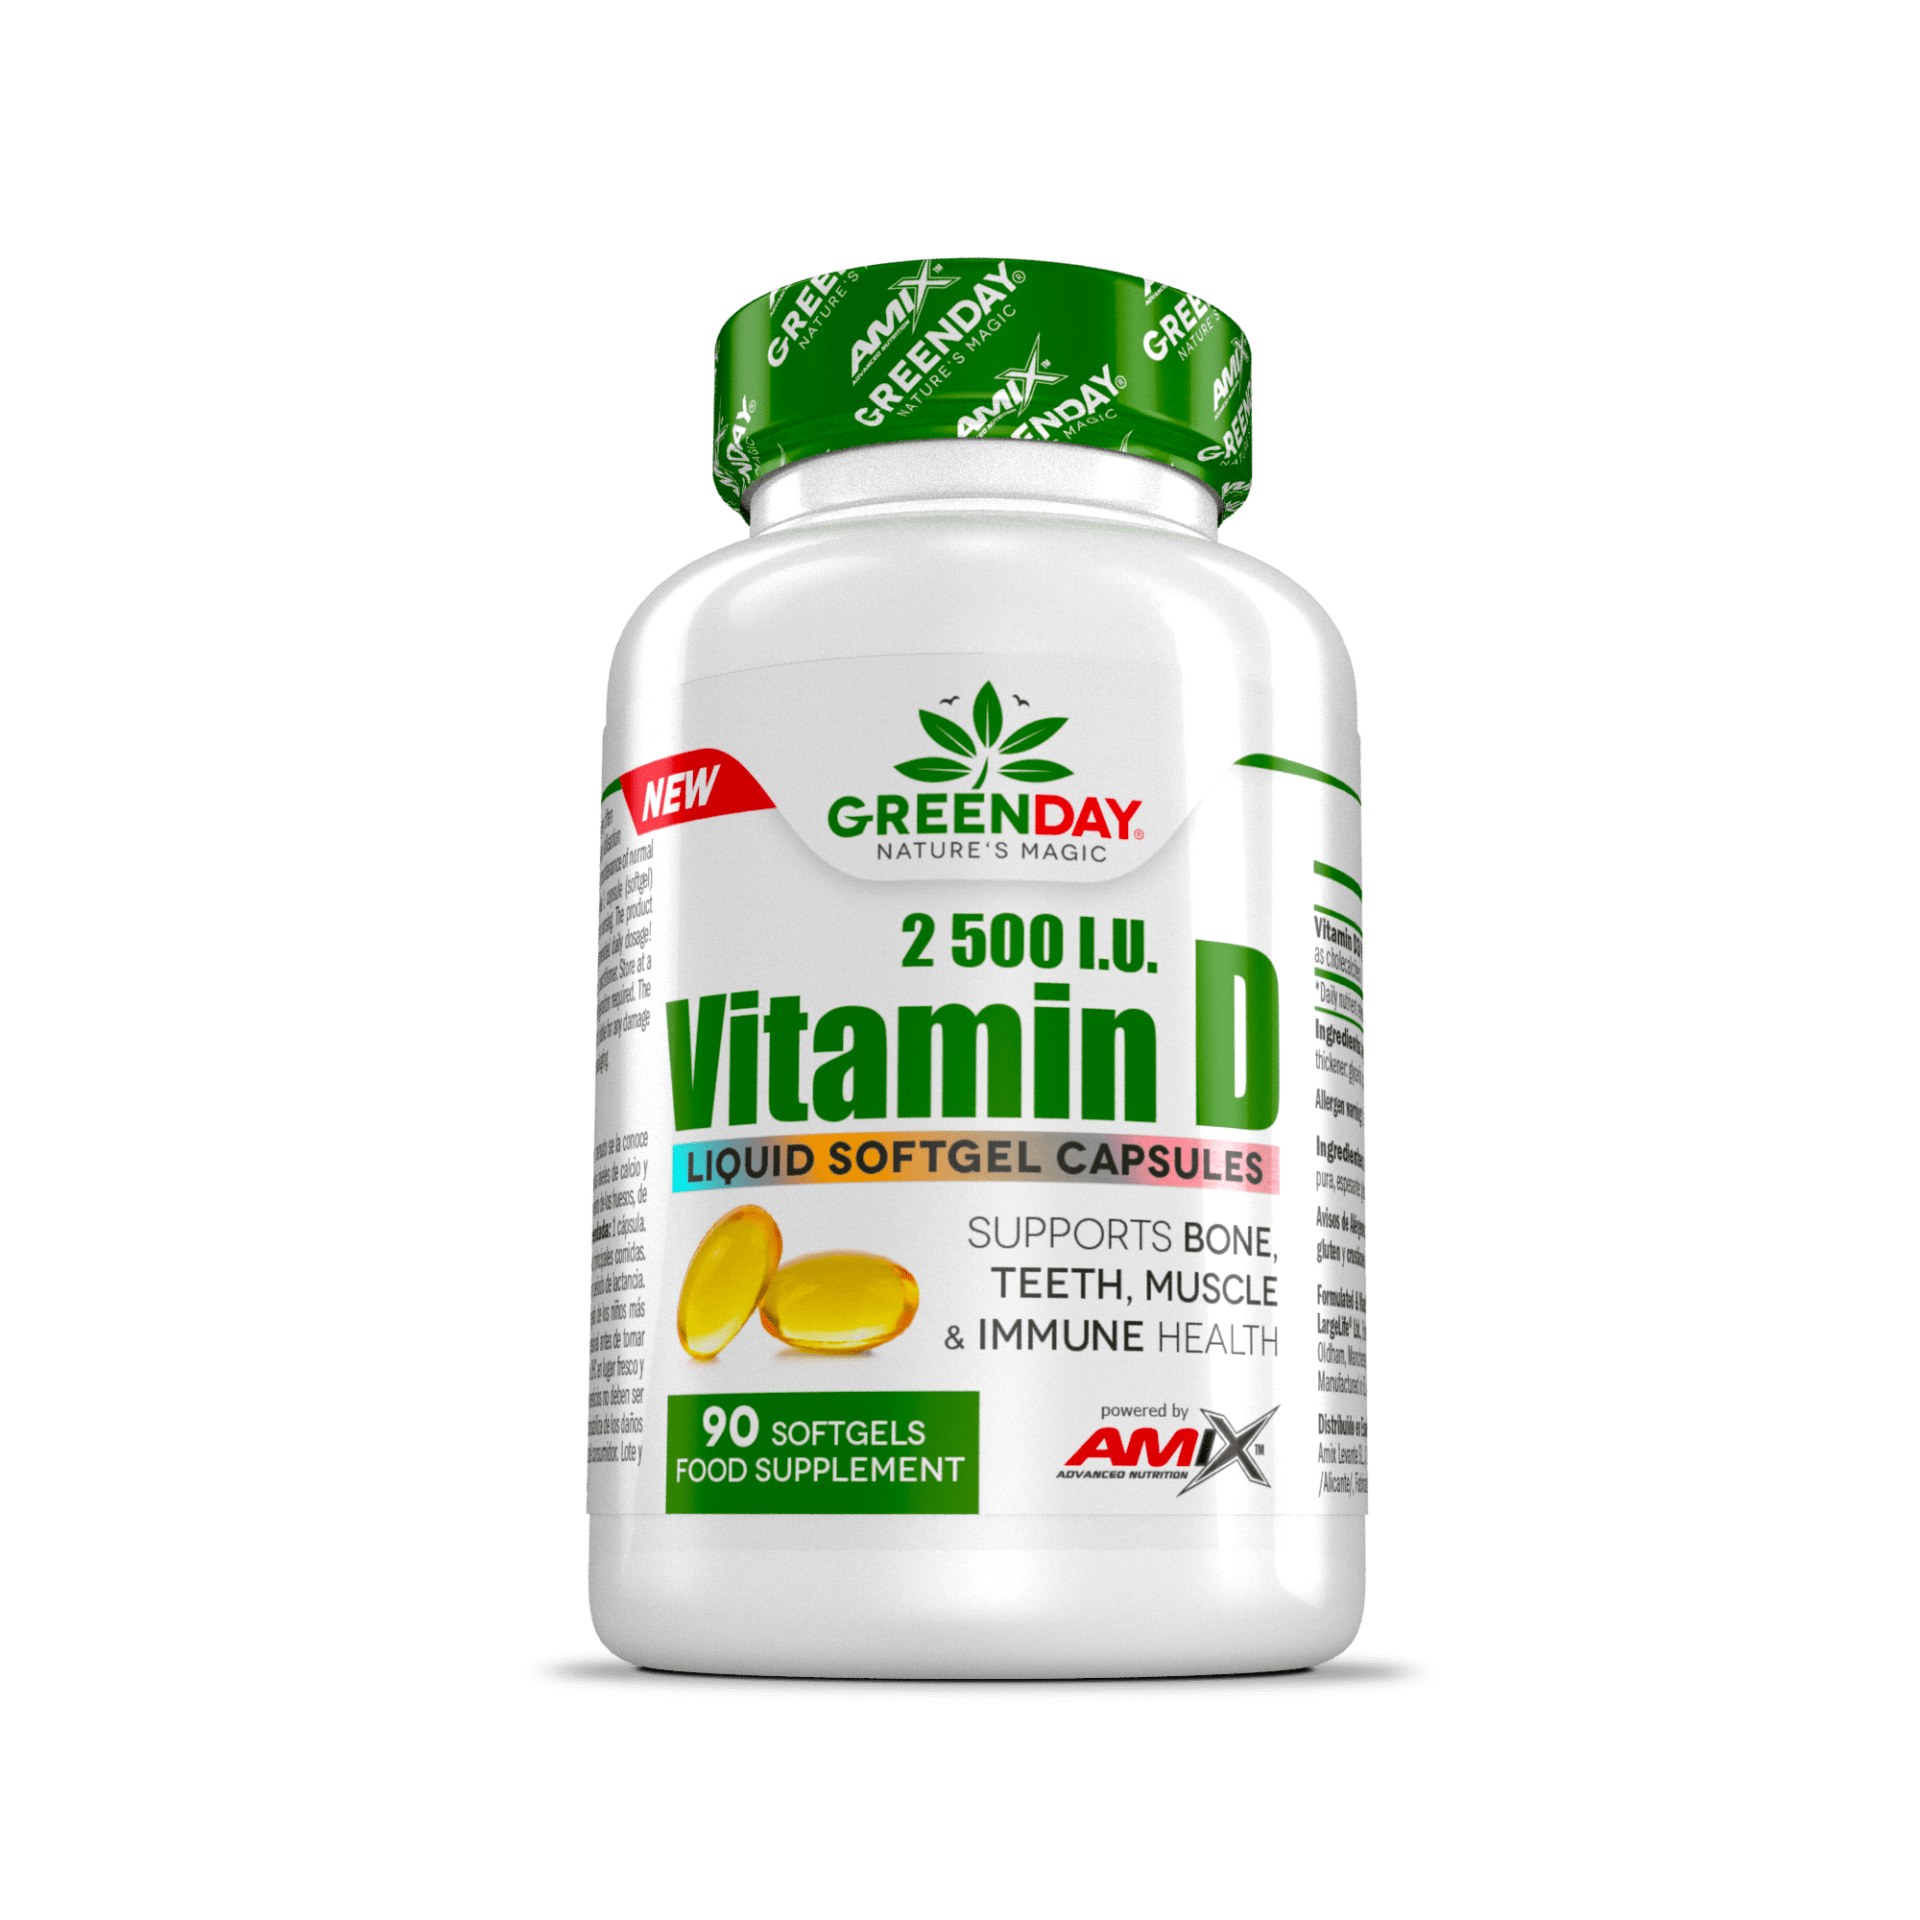 Vitamina D Liquid softgel Amix Greenday 2500 i.u